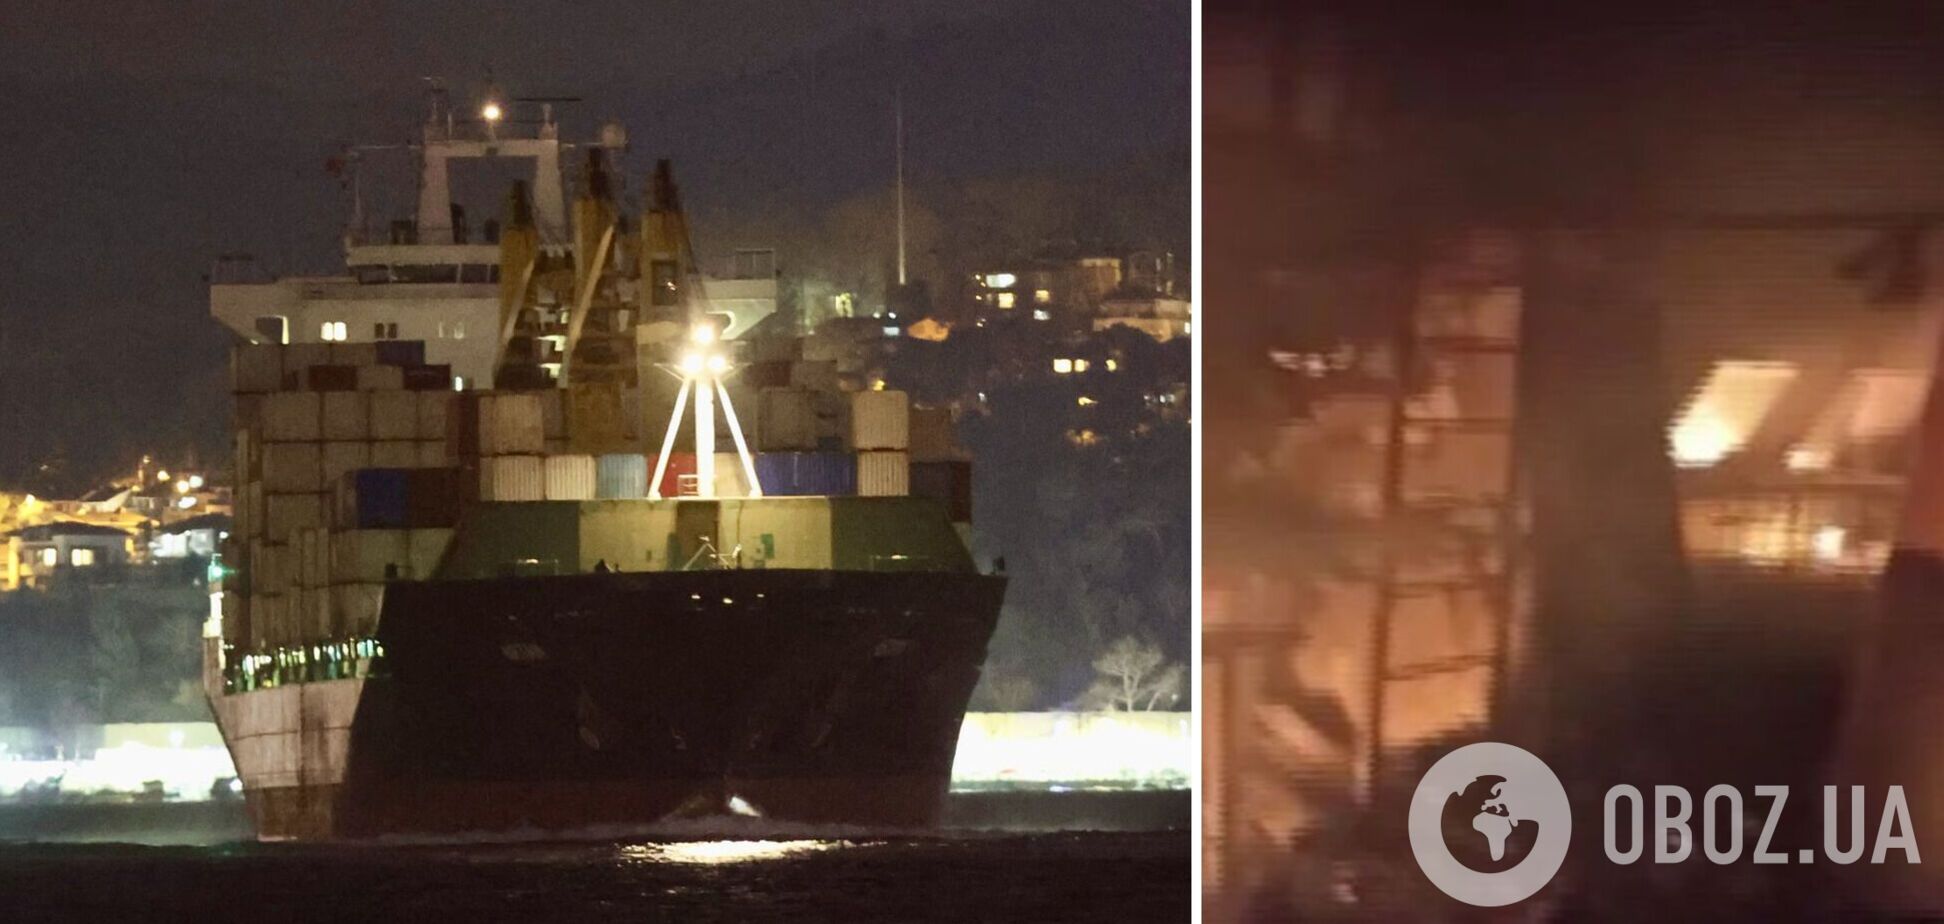 Війська РФ обстріляли судно 'Тузла' під прапором Туреччини в порту Херсона: почалася пожежа. Відео 